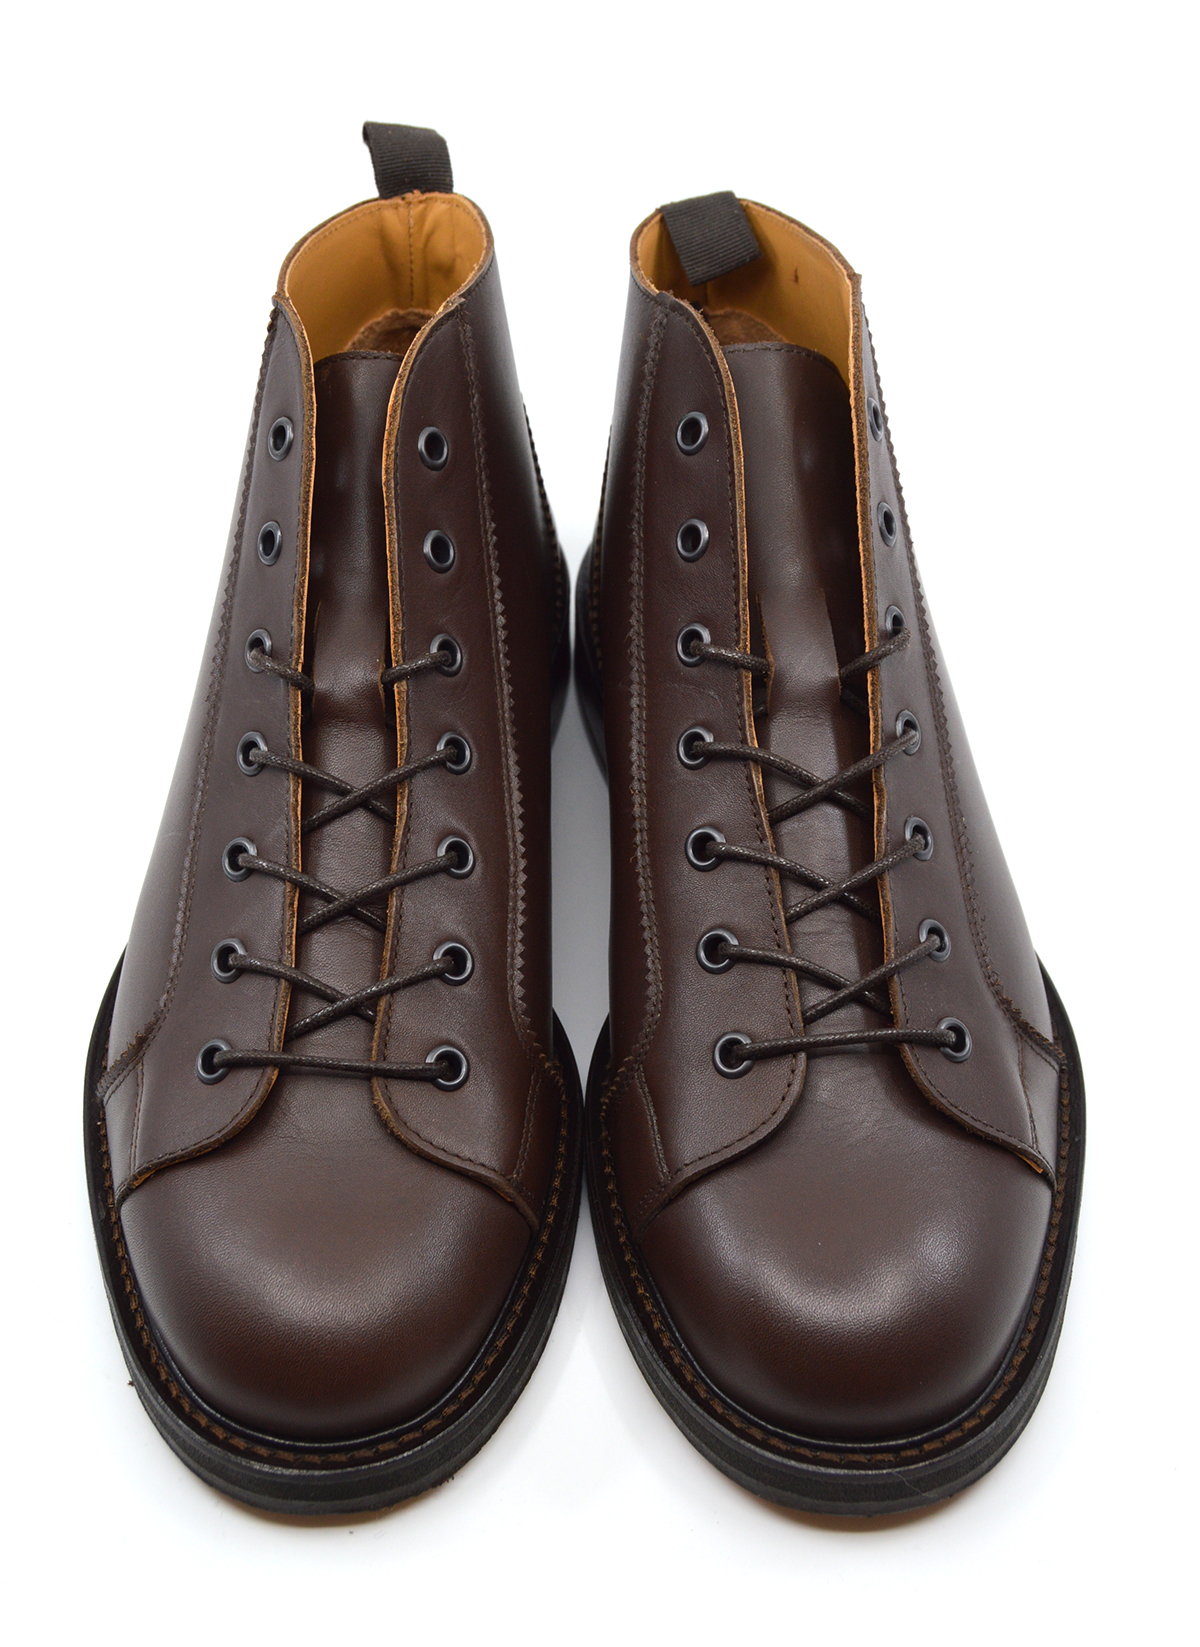 Dark Brown Monkey Boots Version 4 – New 